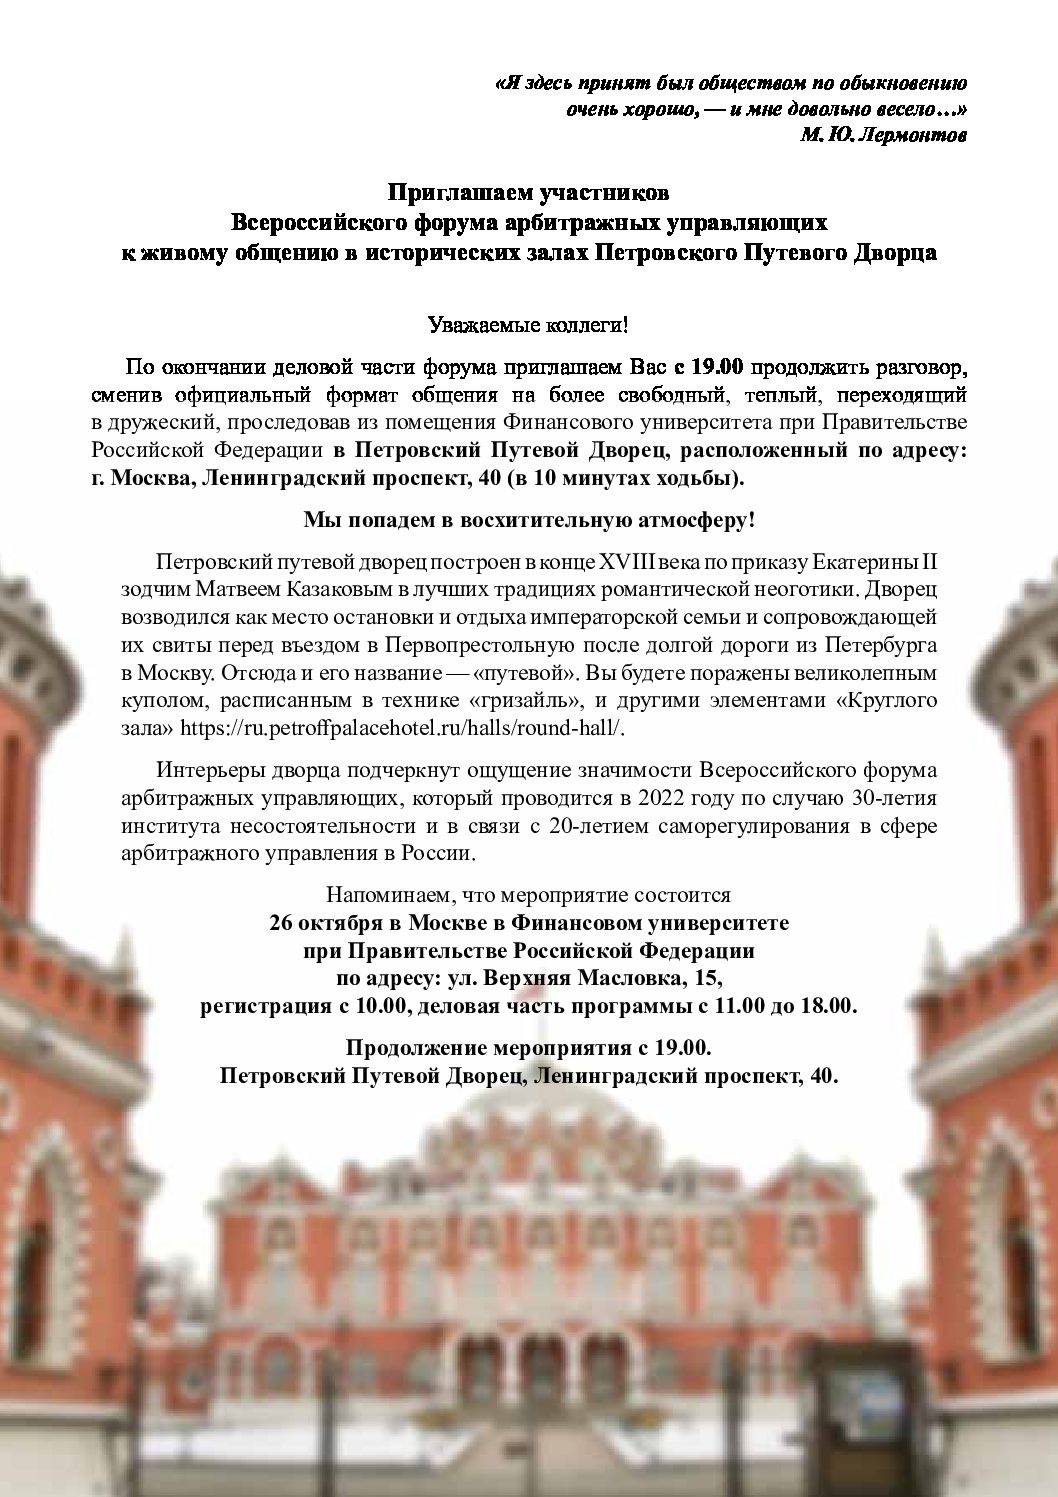 Приглашаем участников форума к продолжению общения в исторических залах Петровского Путевого Дворца